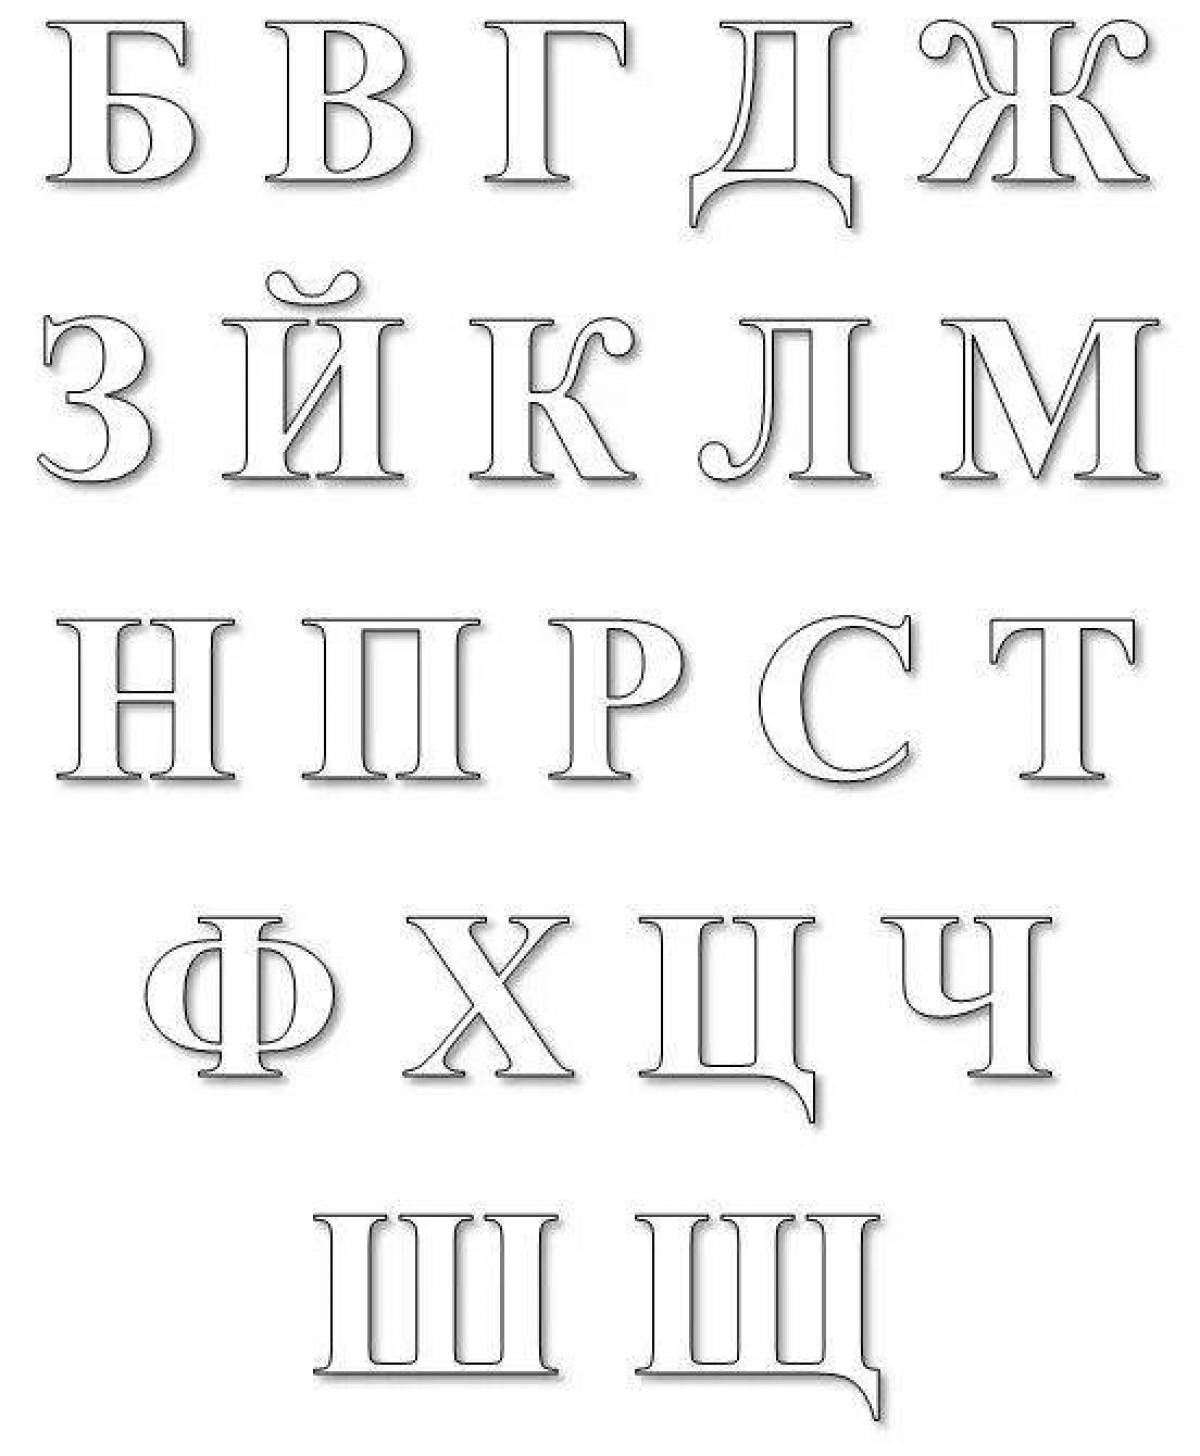 Великолепная раскраска с русским алфавитом